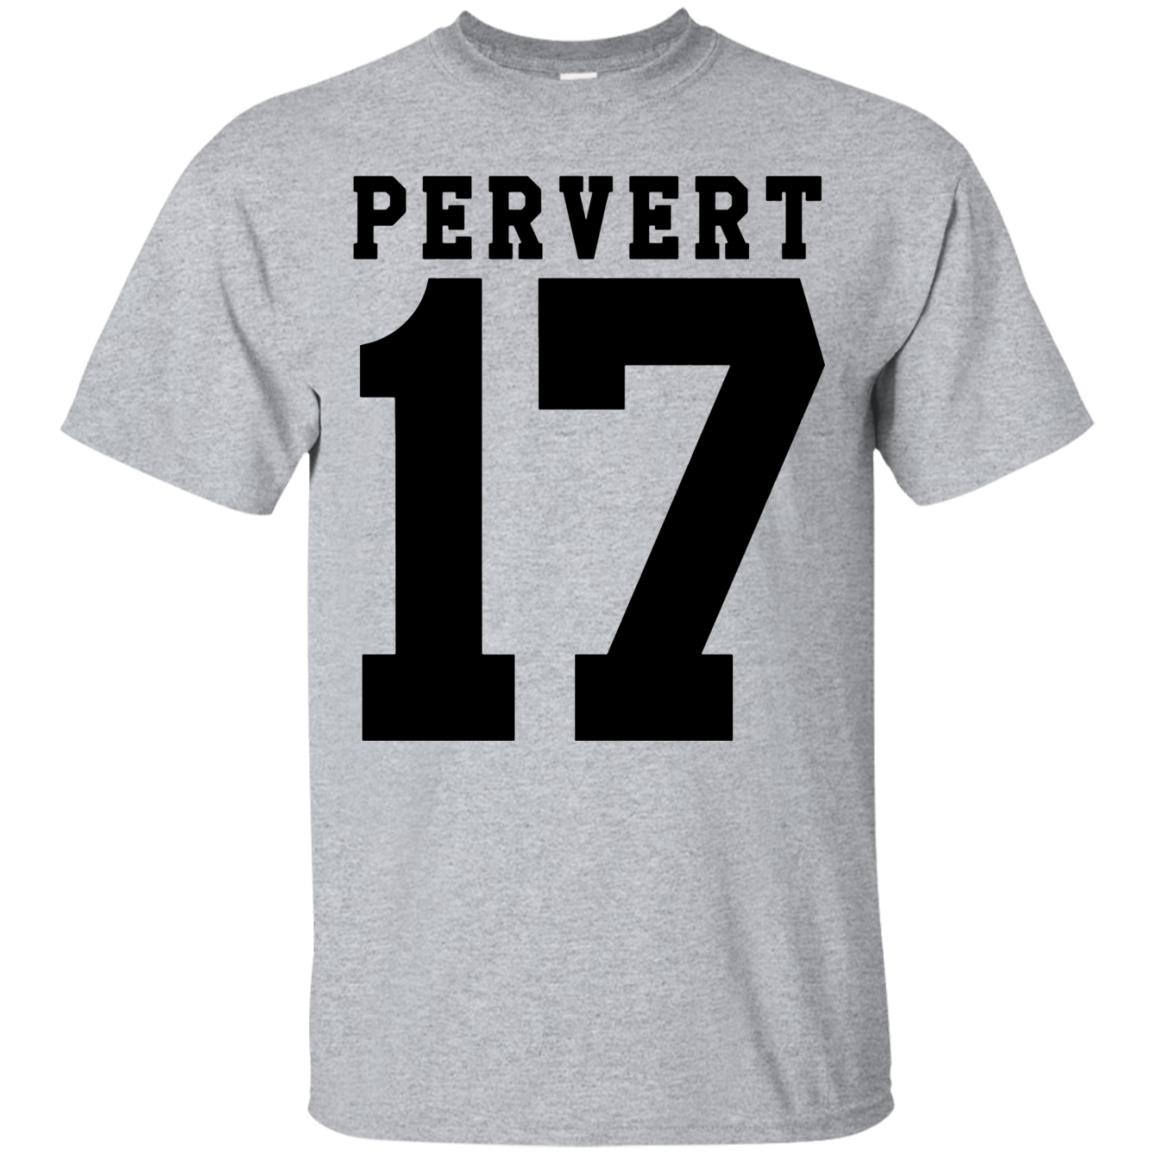 Pervert T Shirt - 10% Off - FavorMerch